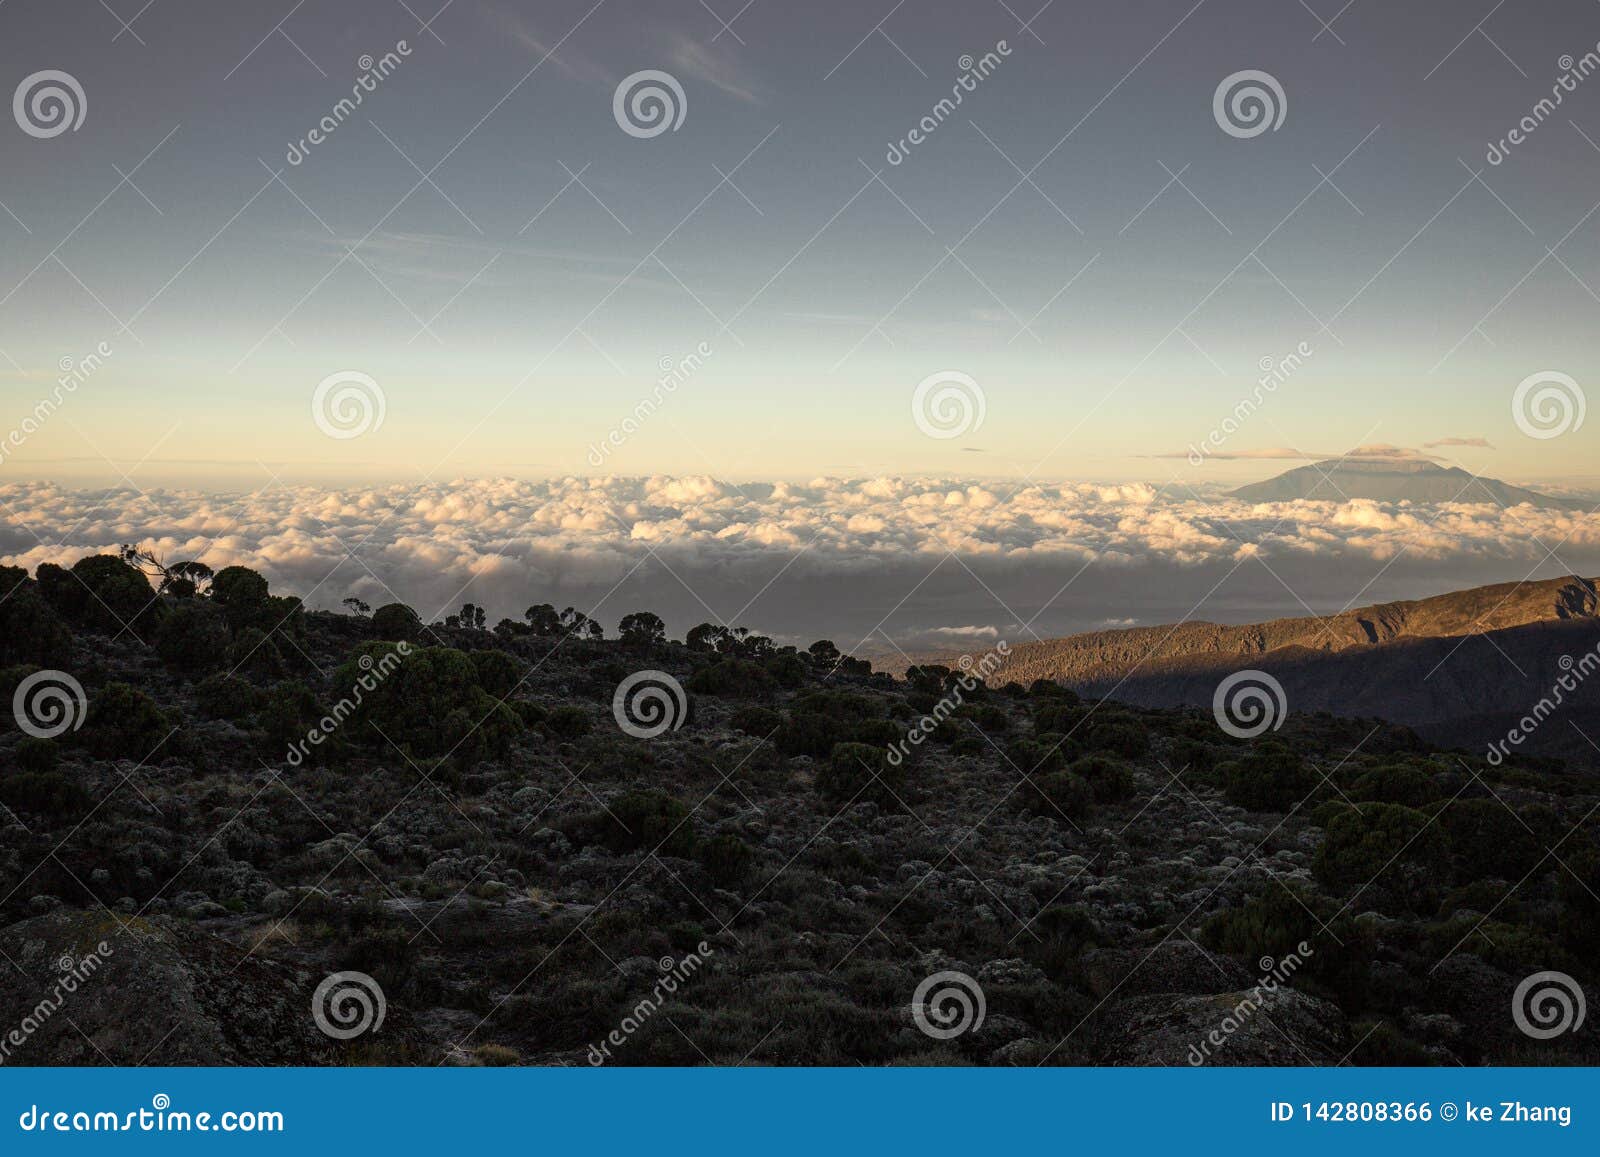 Wandern Sie oben Mt Kilimanjaro Tansania. Ansichten von mt-kilimanjaro auf dem Weg kletternd bis zum Gipfel